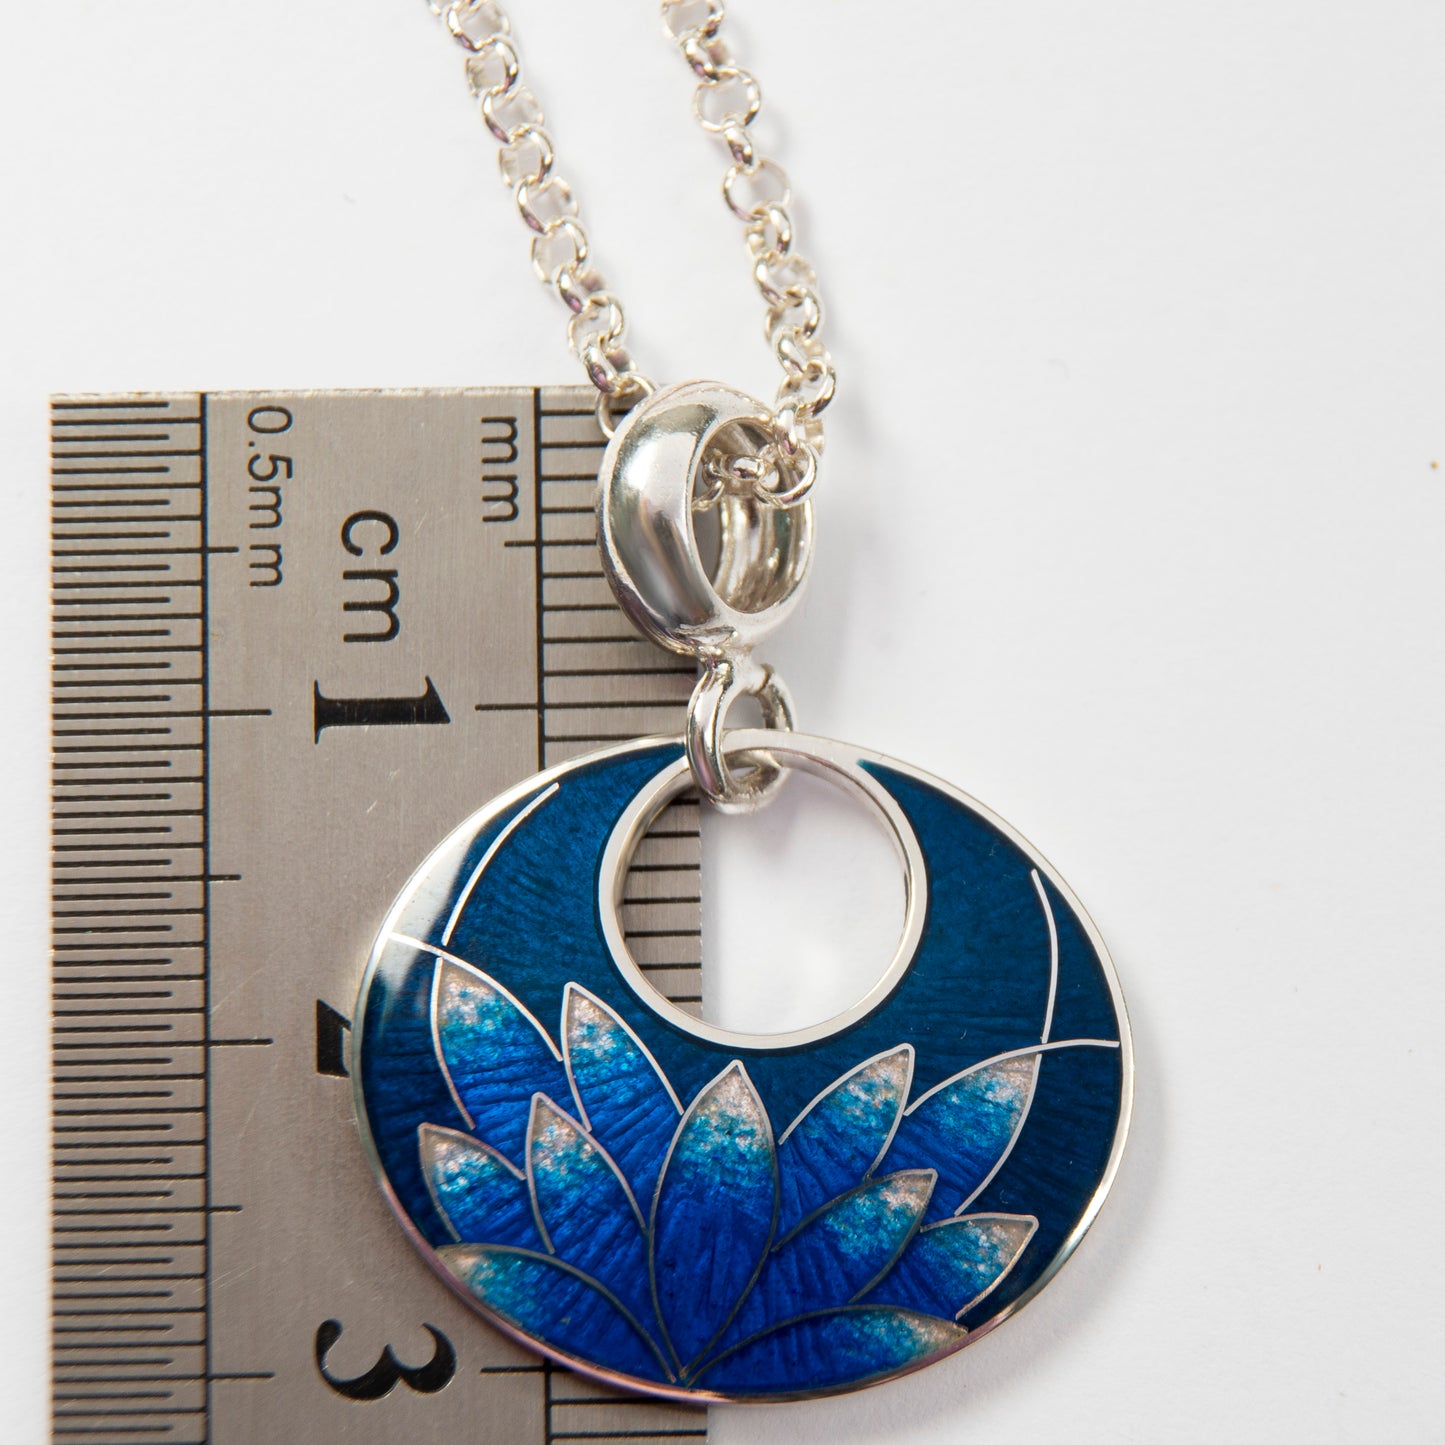 Cloisonné Enamel Pendant-Necklace "Blue Lotus"